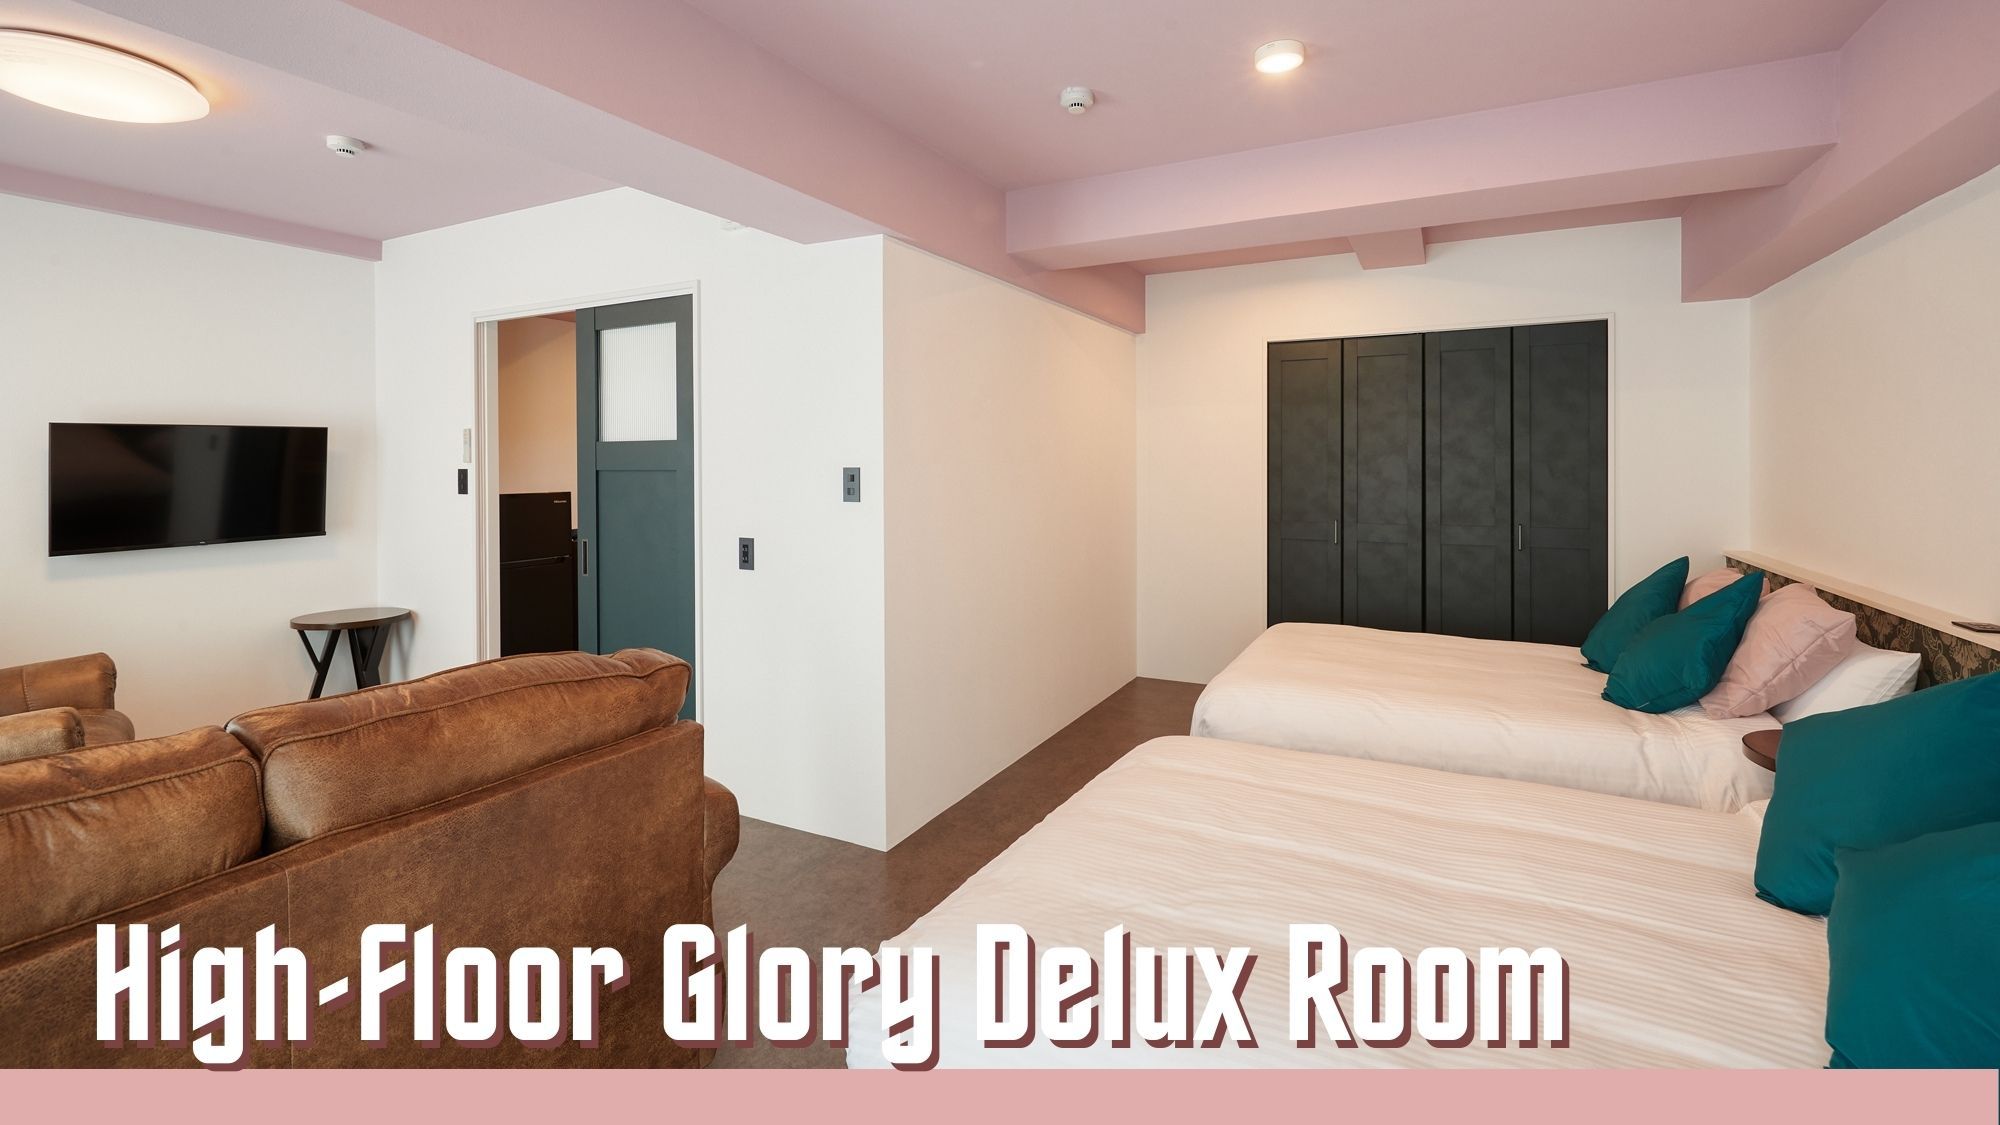 High-Floor Glory Deluxe Room